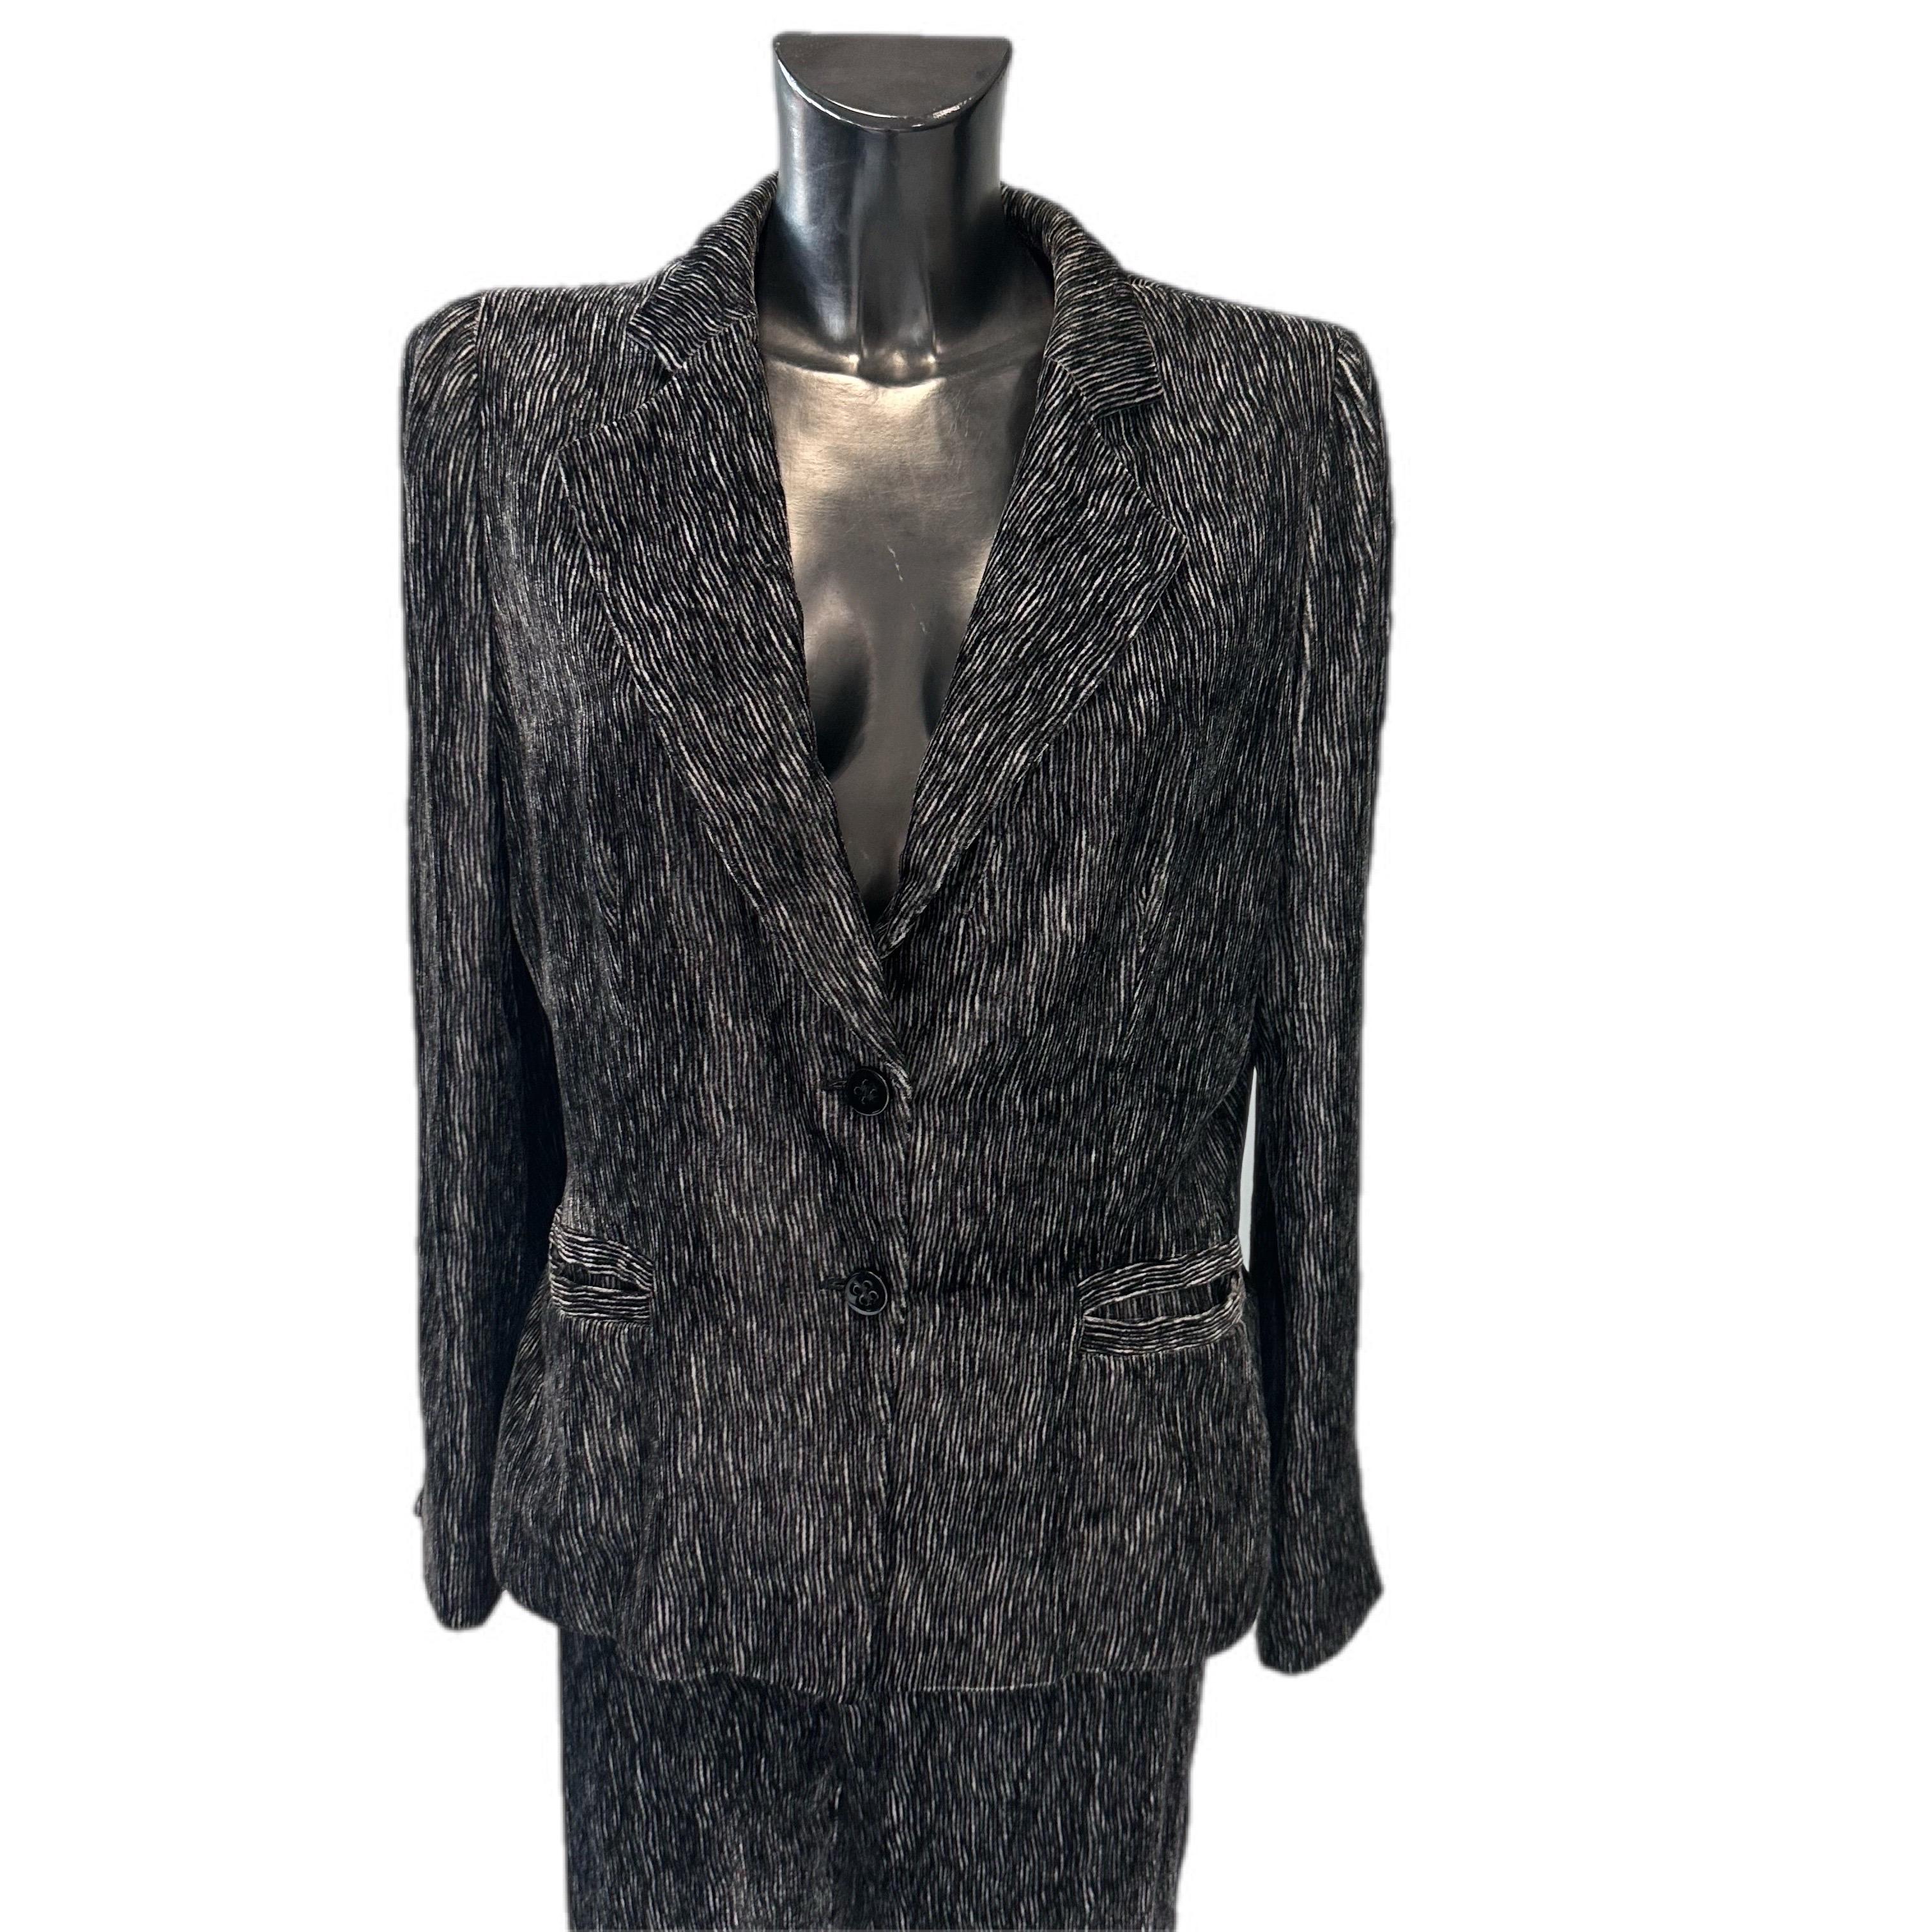 Completo Armani giacca e pantalone anni 2000 in velluto  In Excellent Condition For Sale In Basaluzzo, IT